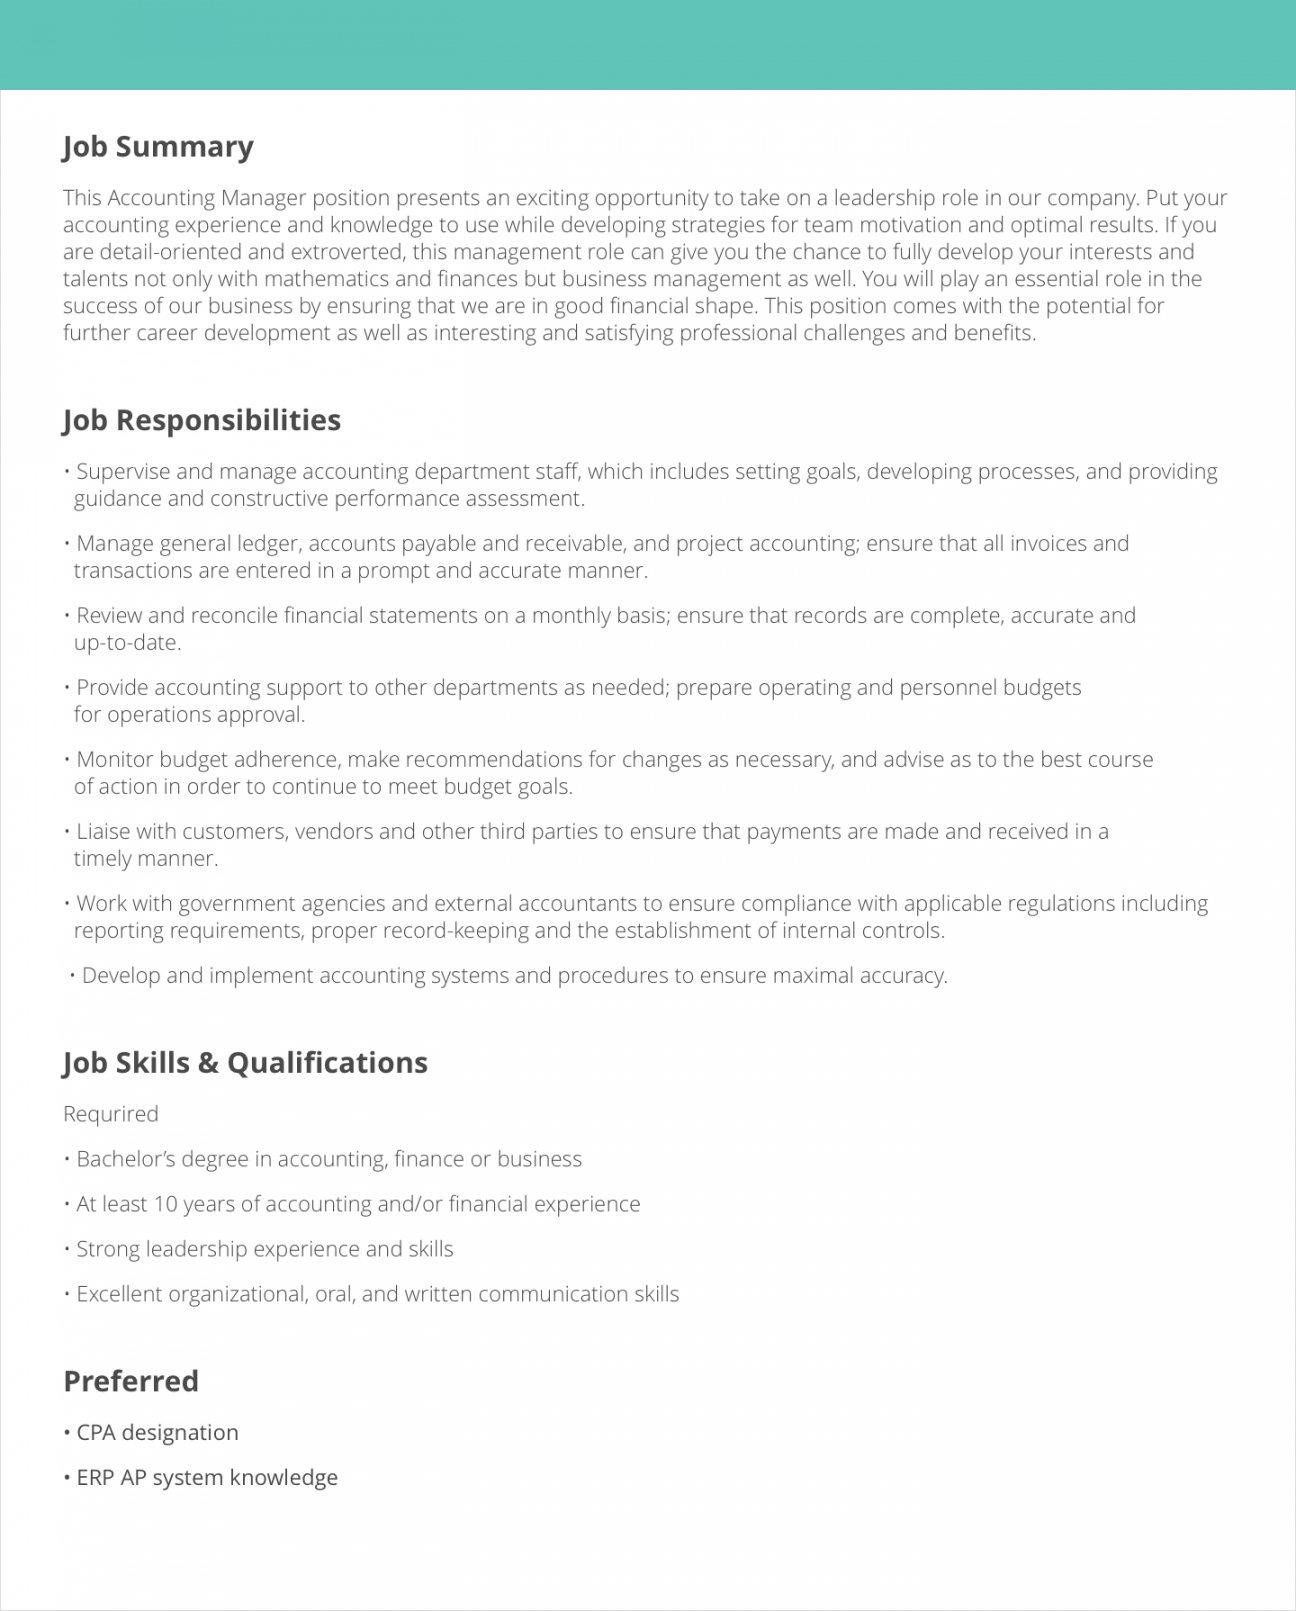 Free Job Description Samples & Examples Livecareer Content Manager Job